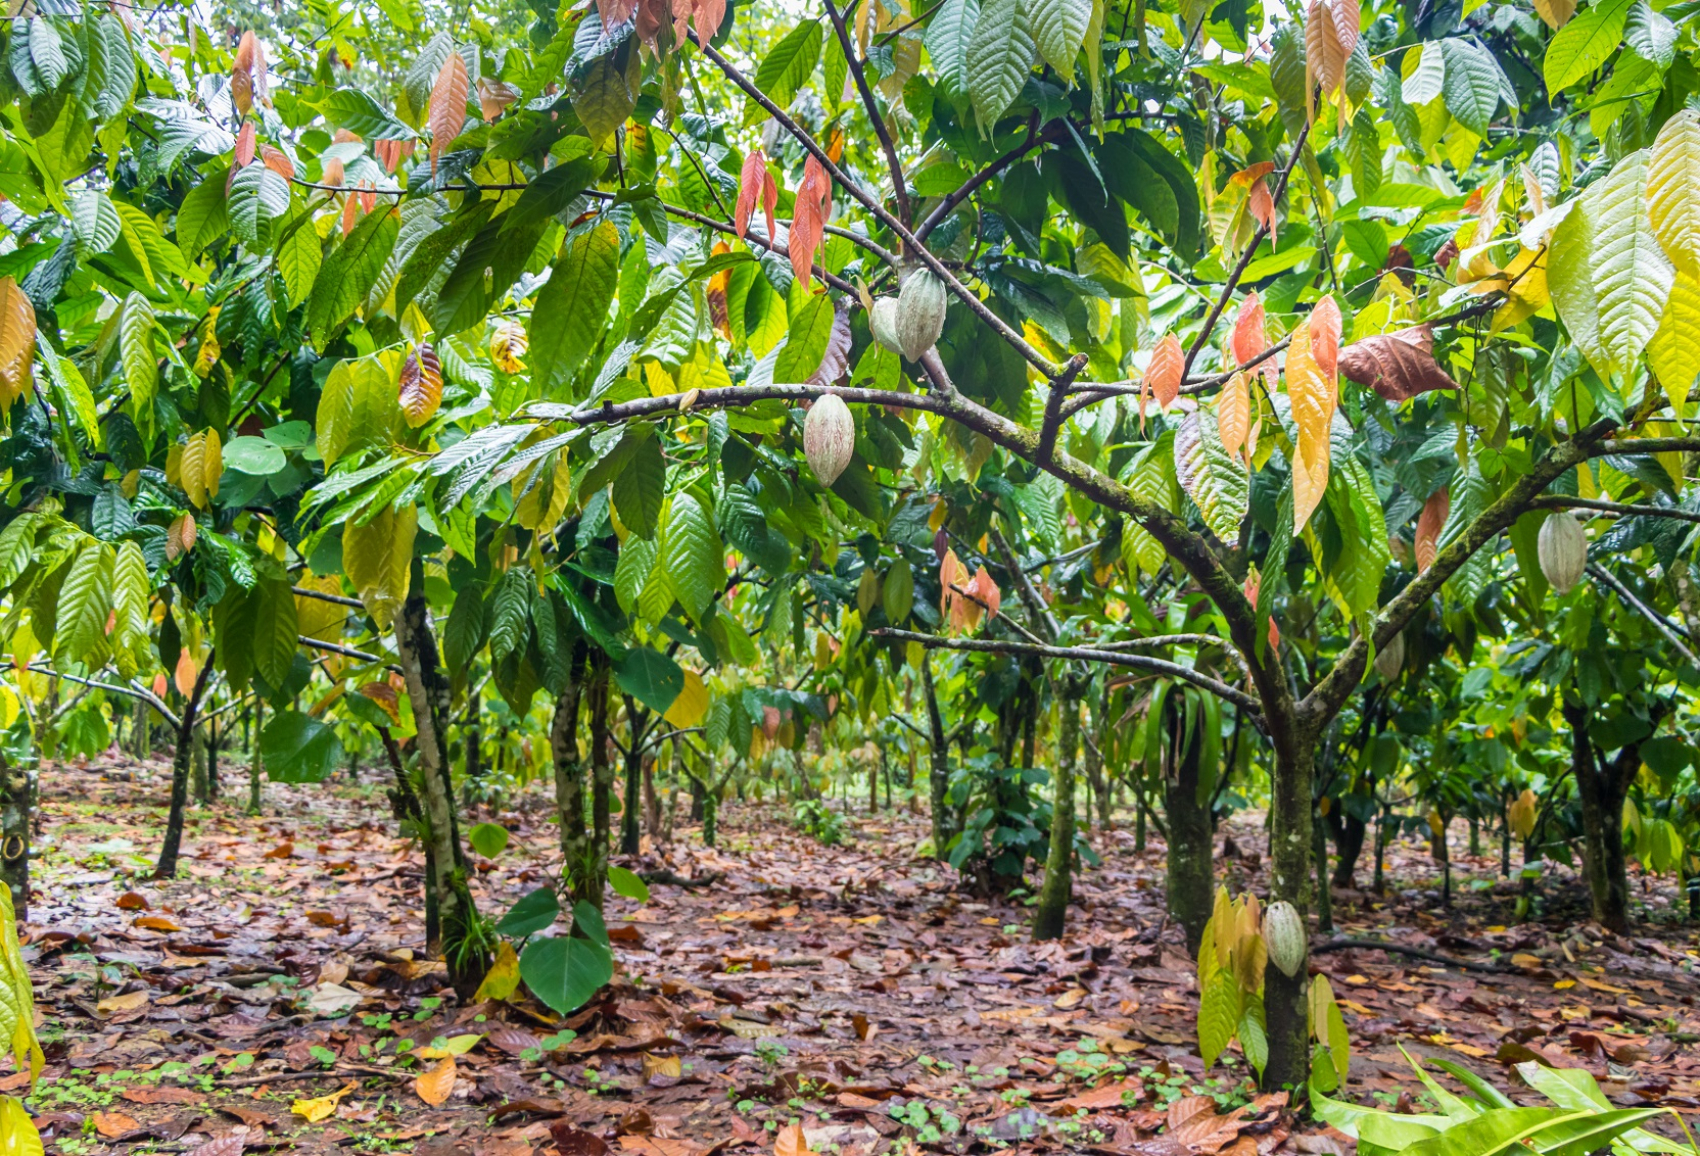 La culture du cacao fournit un revenu à environ un cinquième
de la population ivoirienne. Pour autant, plus de la moitié des producteurs vivent en deçà du seuil de pauvreté. © Joseph Jacobs/iStock